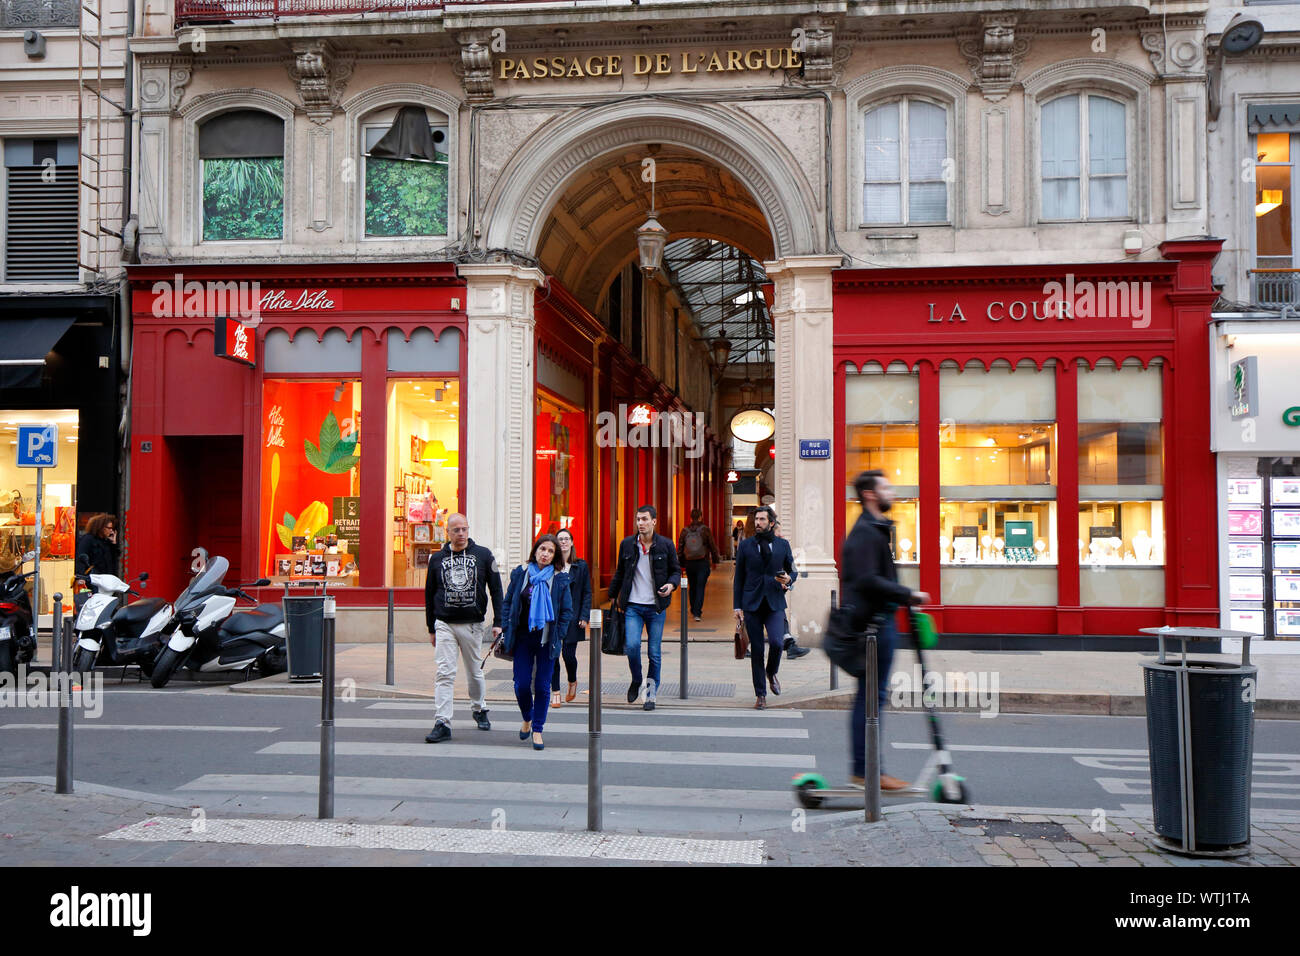 Il passaggio de l'sostengono, Rue de Brest ingresso, Lione, Francia Foto Stock